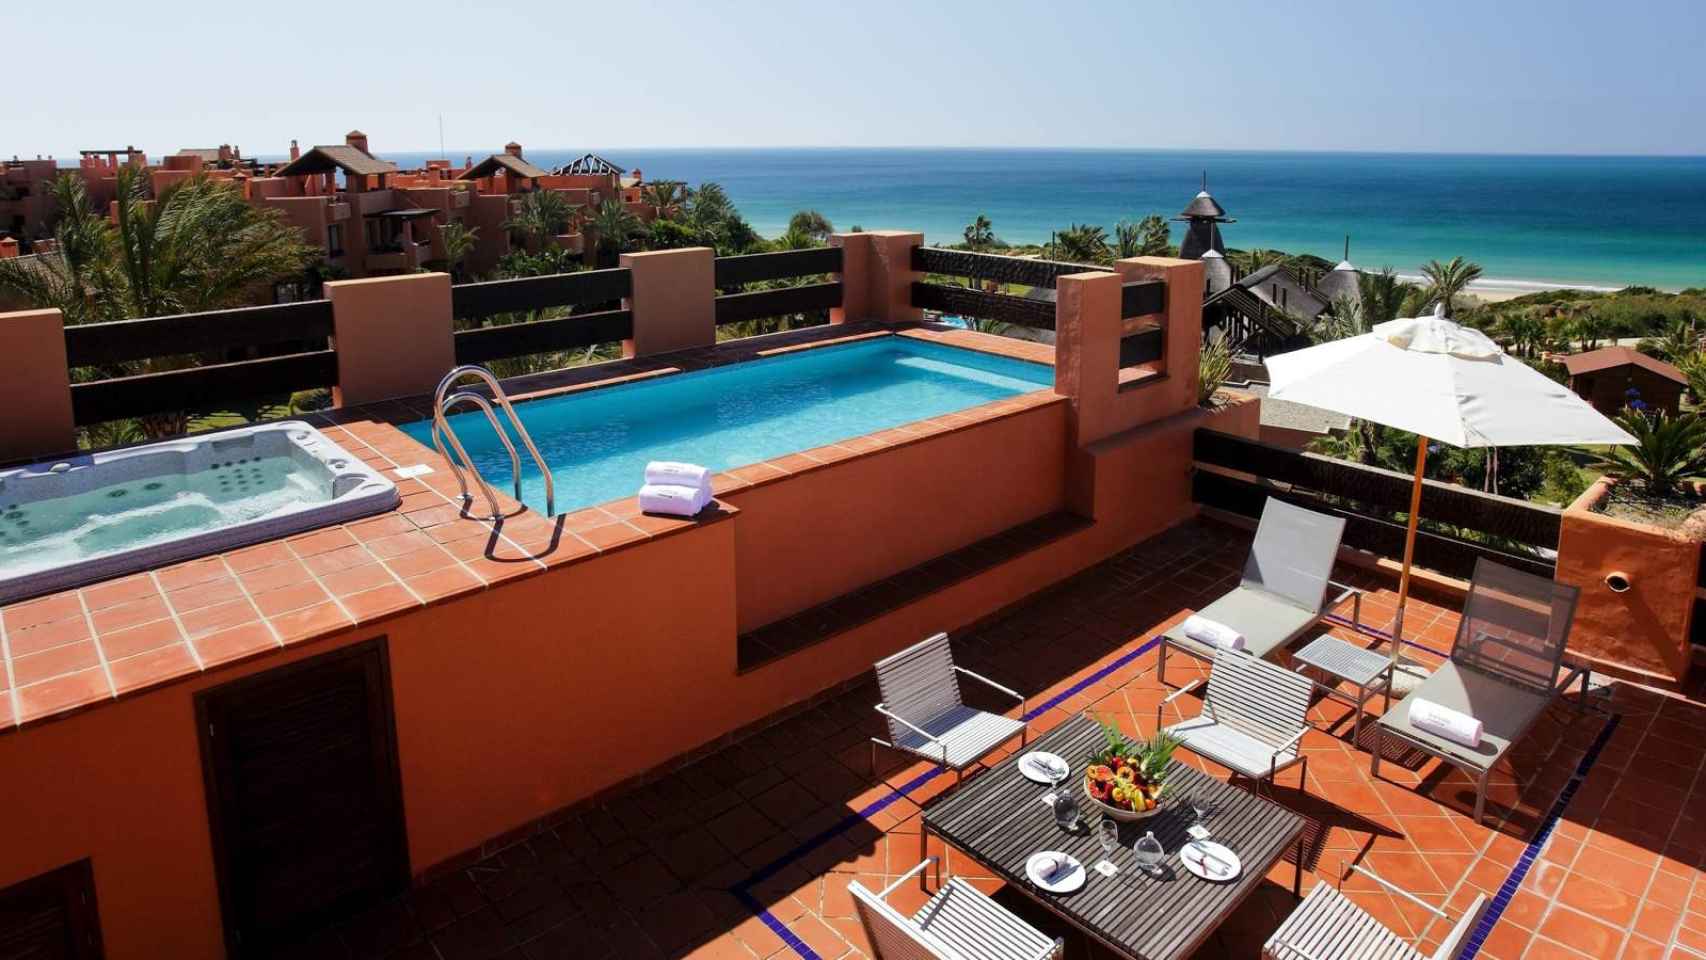 La terraza de la suite tiene bañera de hidromasaje y piscina privada. Foto: Barceló.